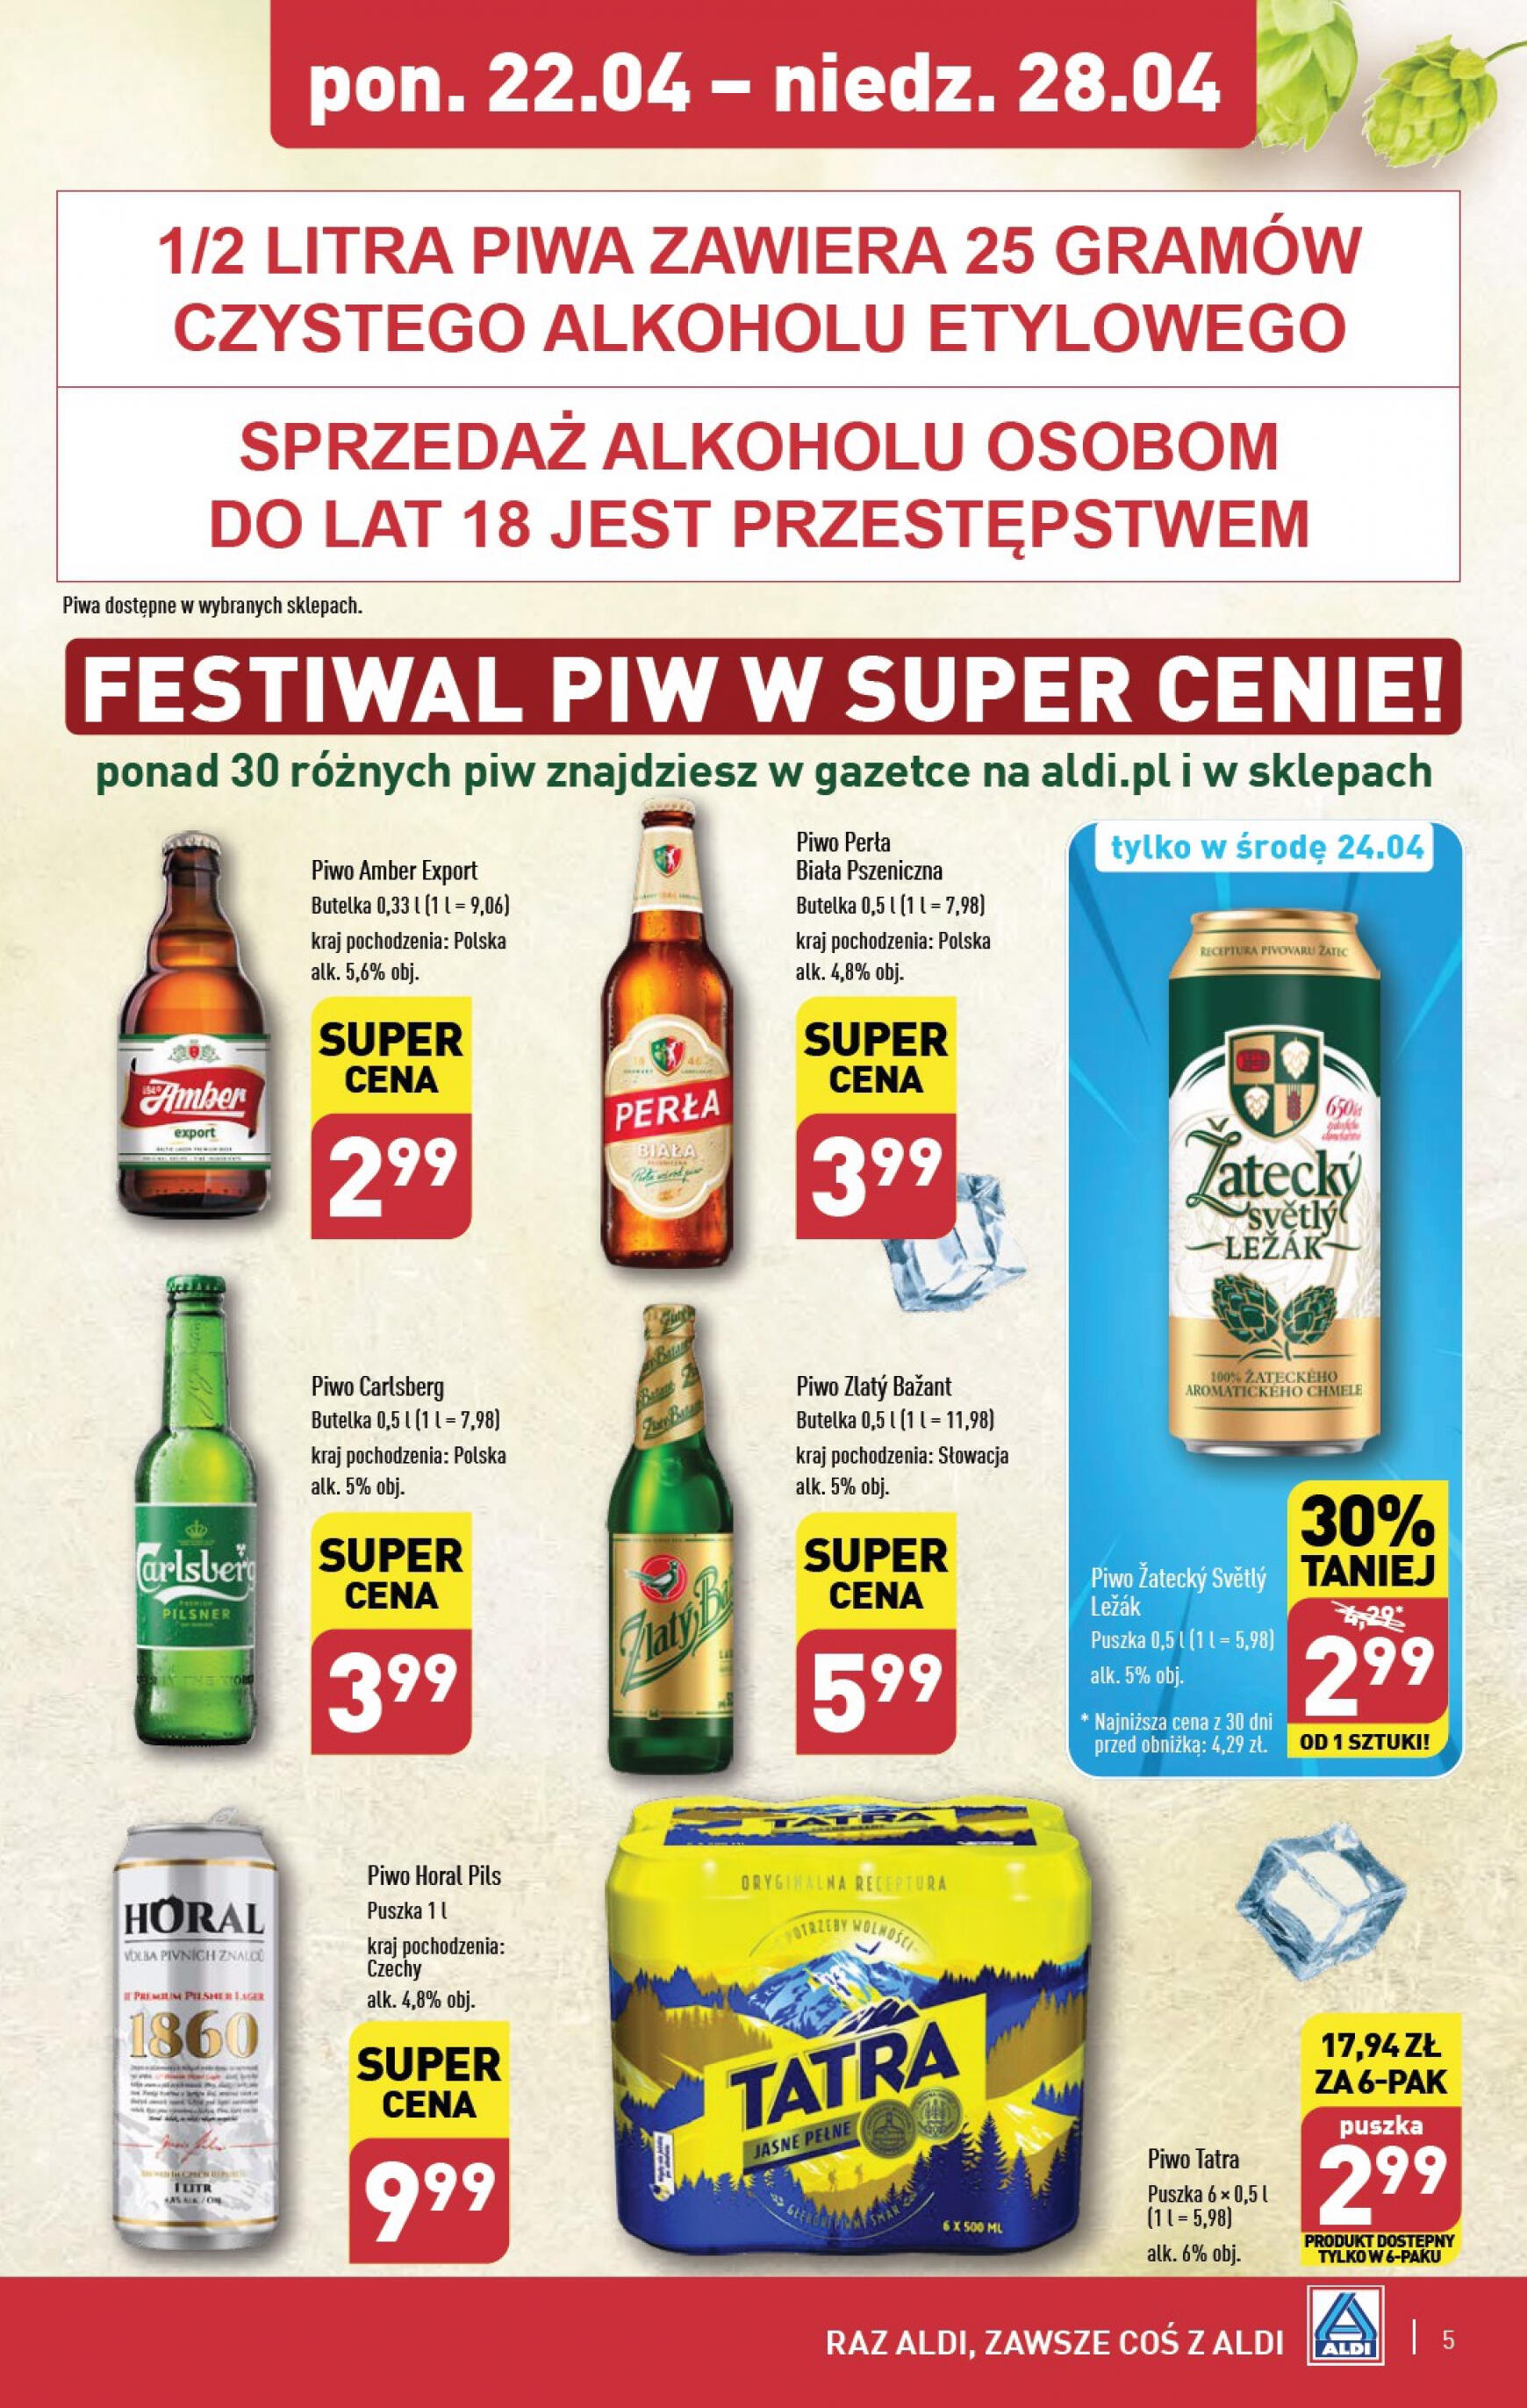 aldi - Aldi - Festiwal piwa w super cenach gazetka aktualna ważna od 22.04. - 28.04. - page: 5